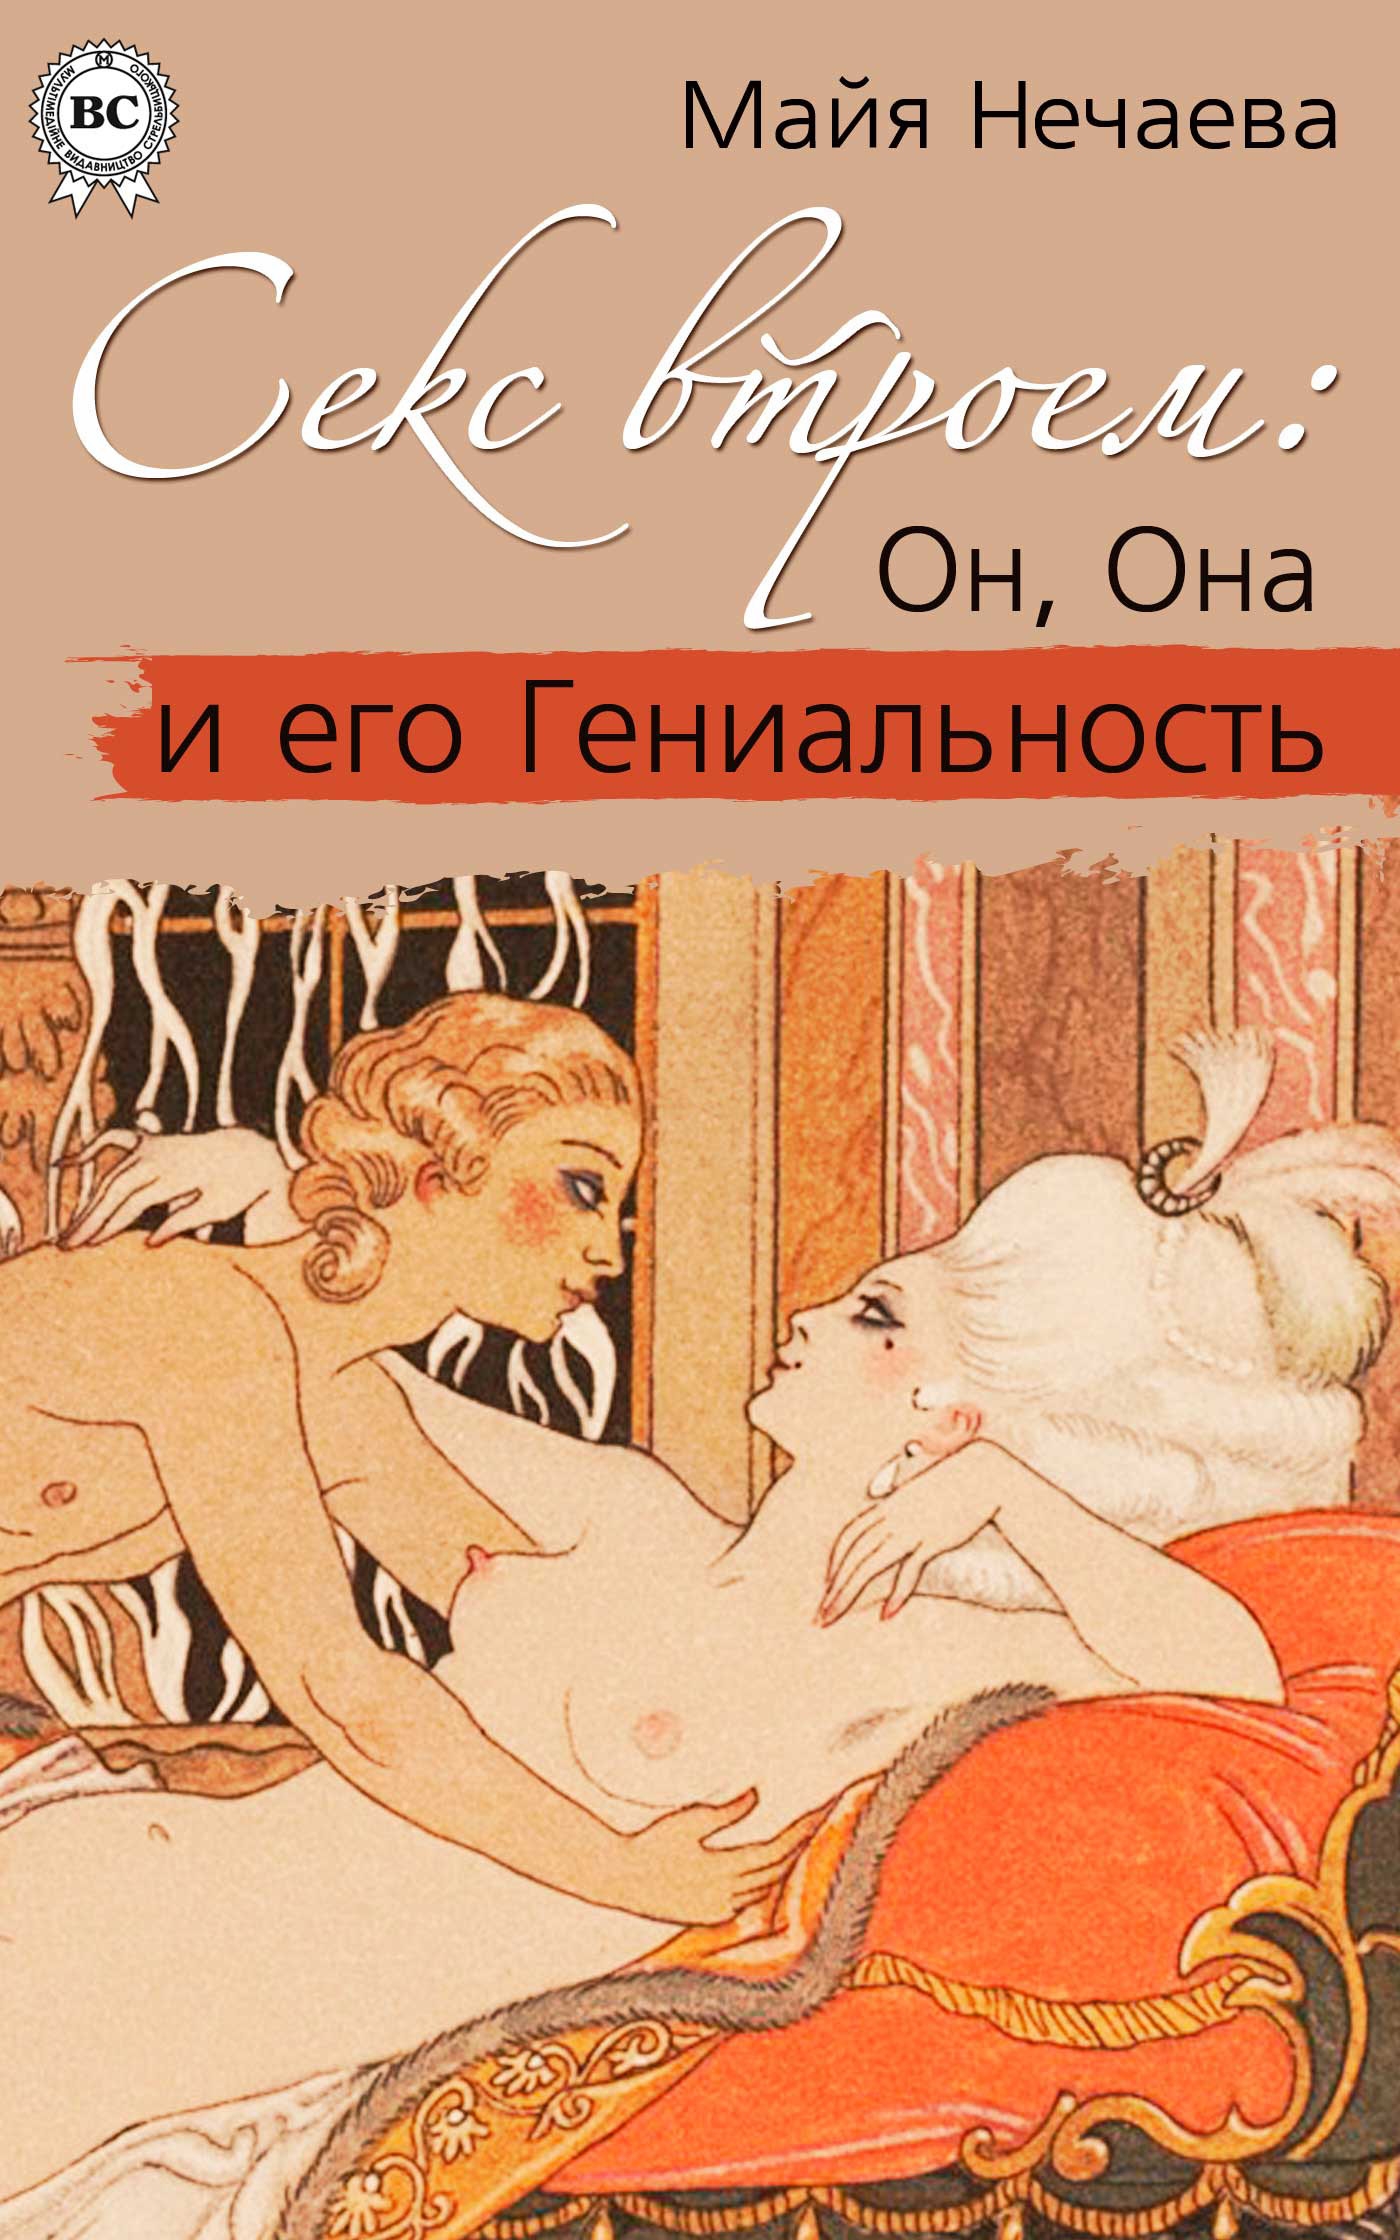 Vicotorian erotic literature